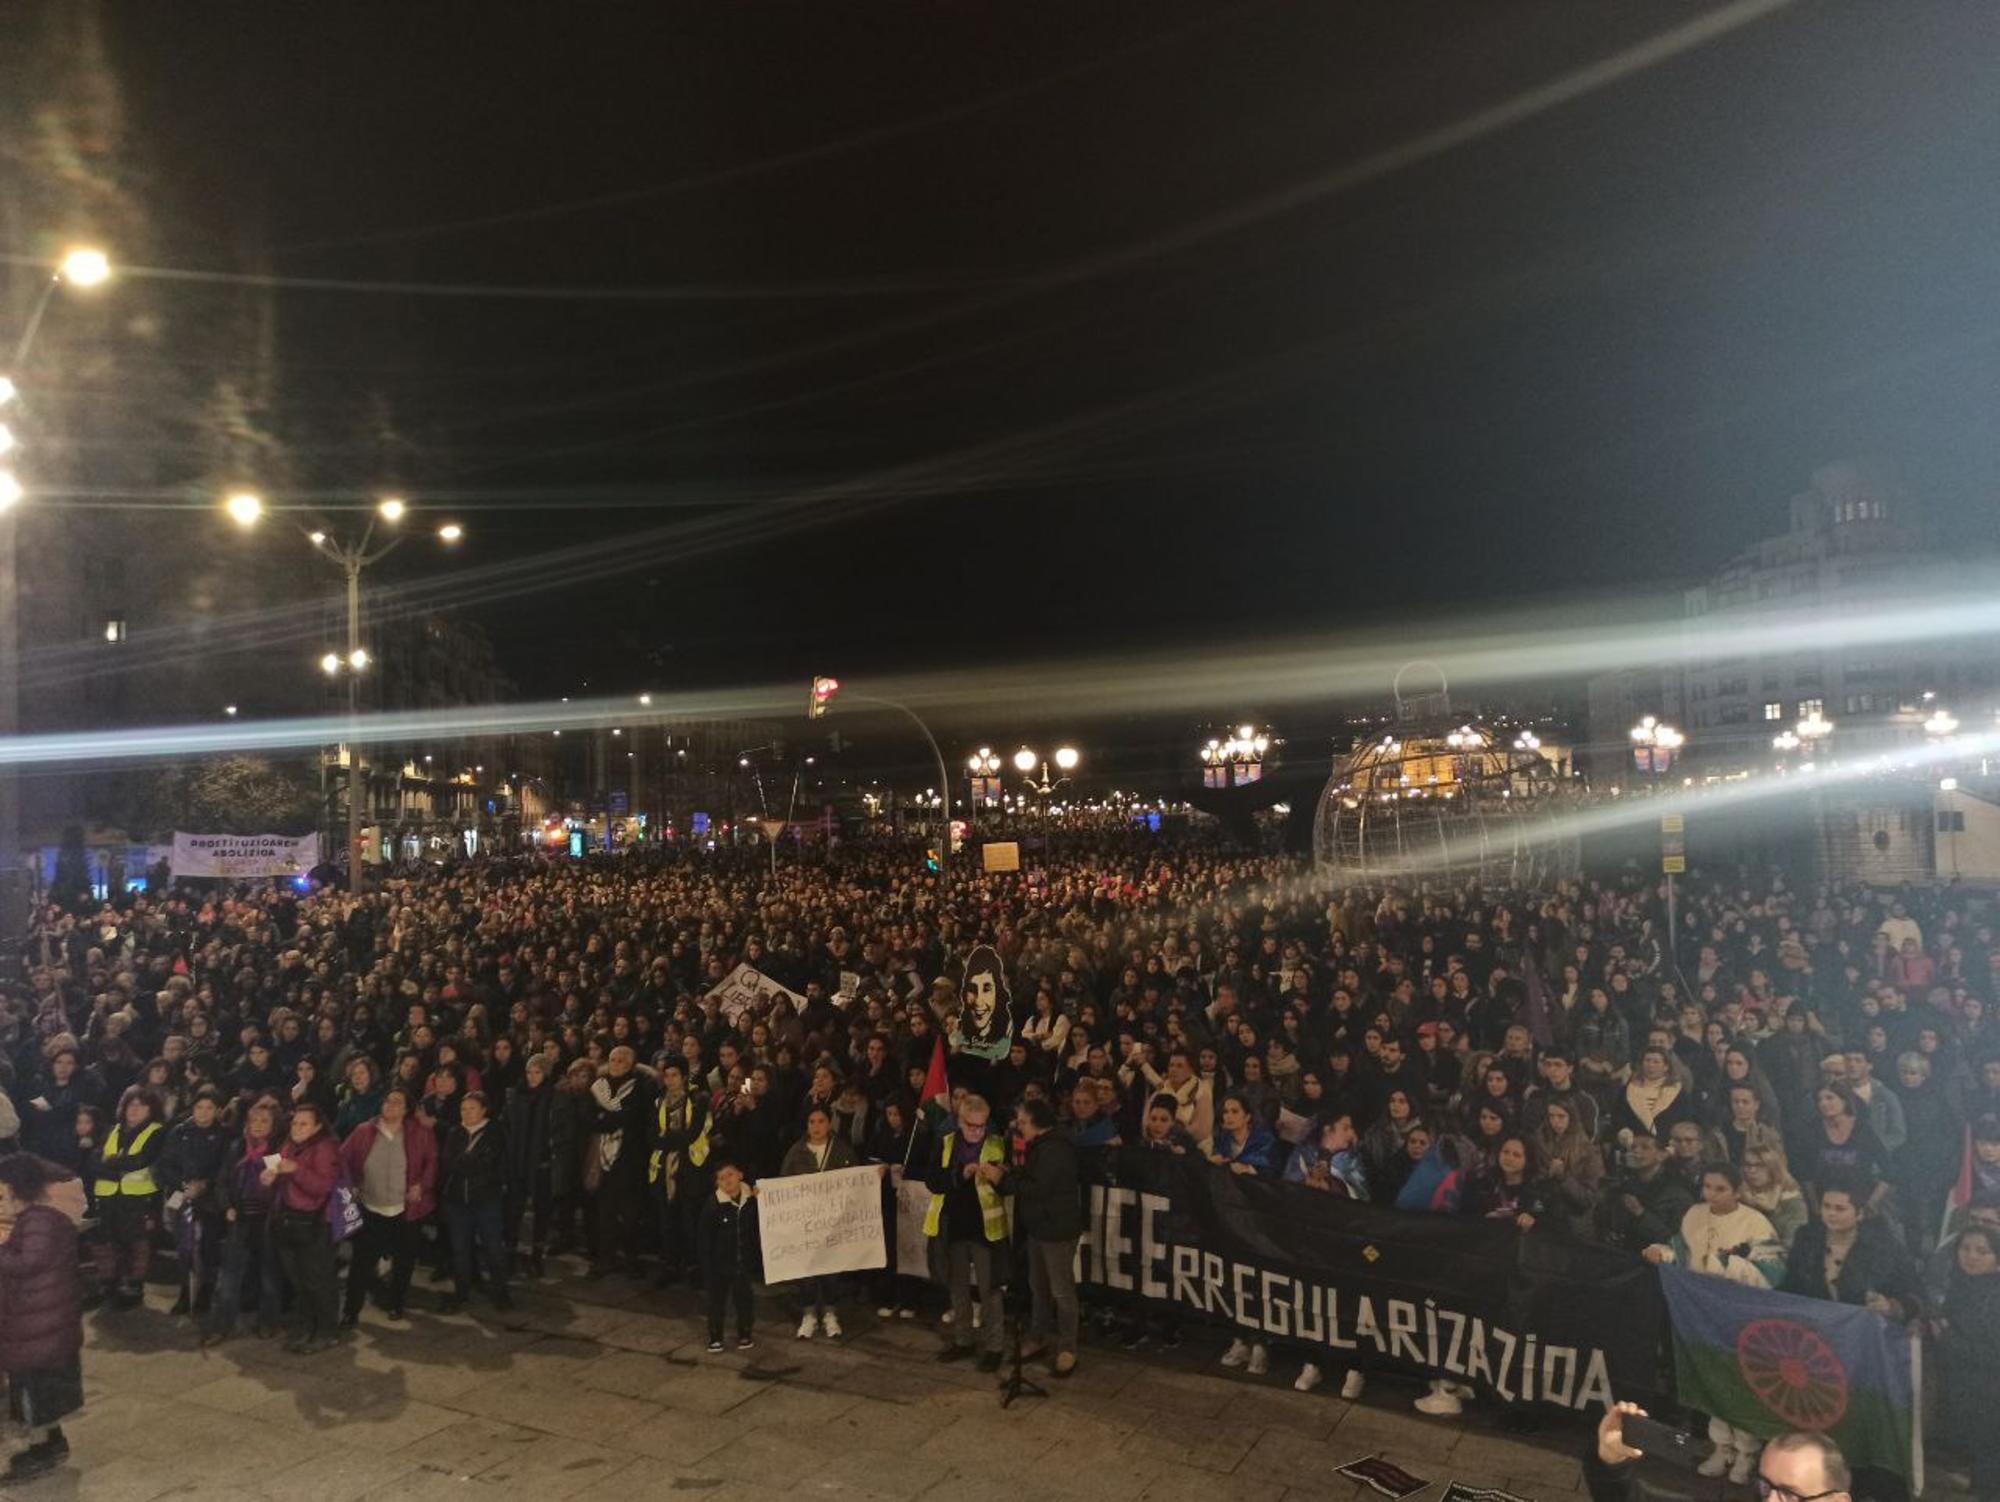 Final de la manifestación del 25N en Bilbao frente al Ayuntamiento